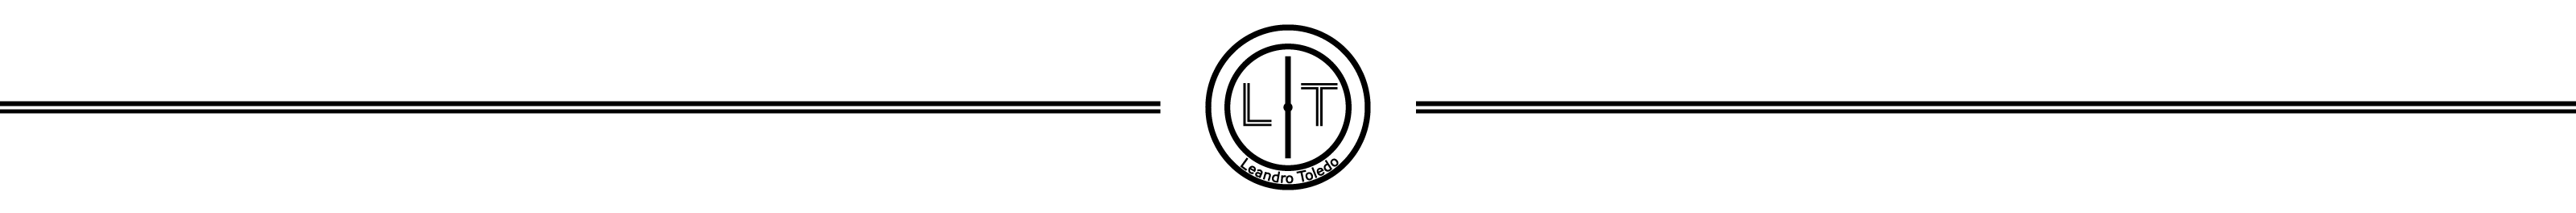 Leandro Toledo's profile banner